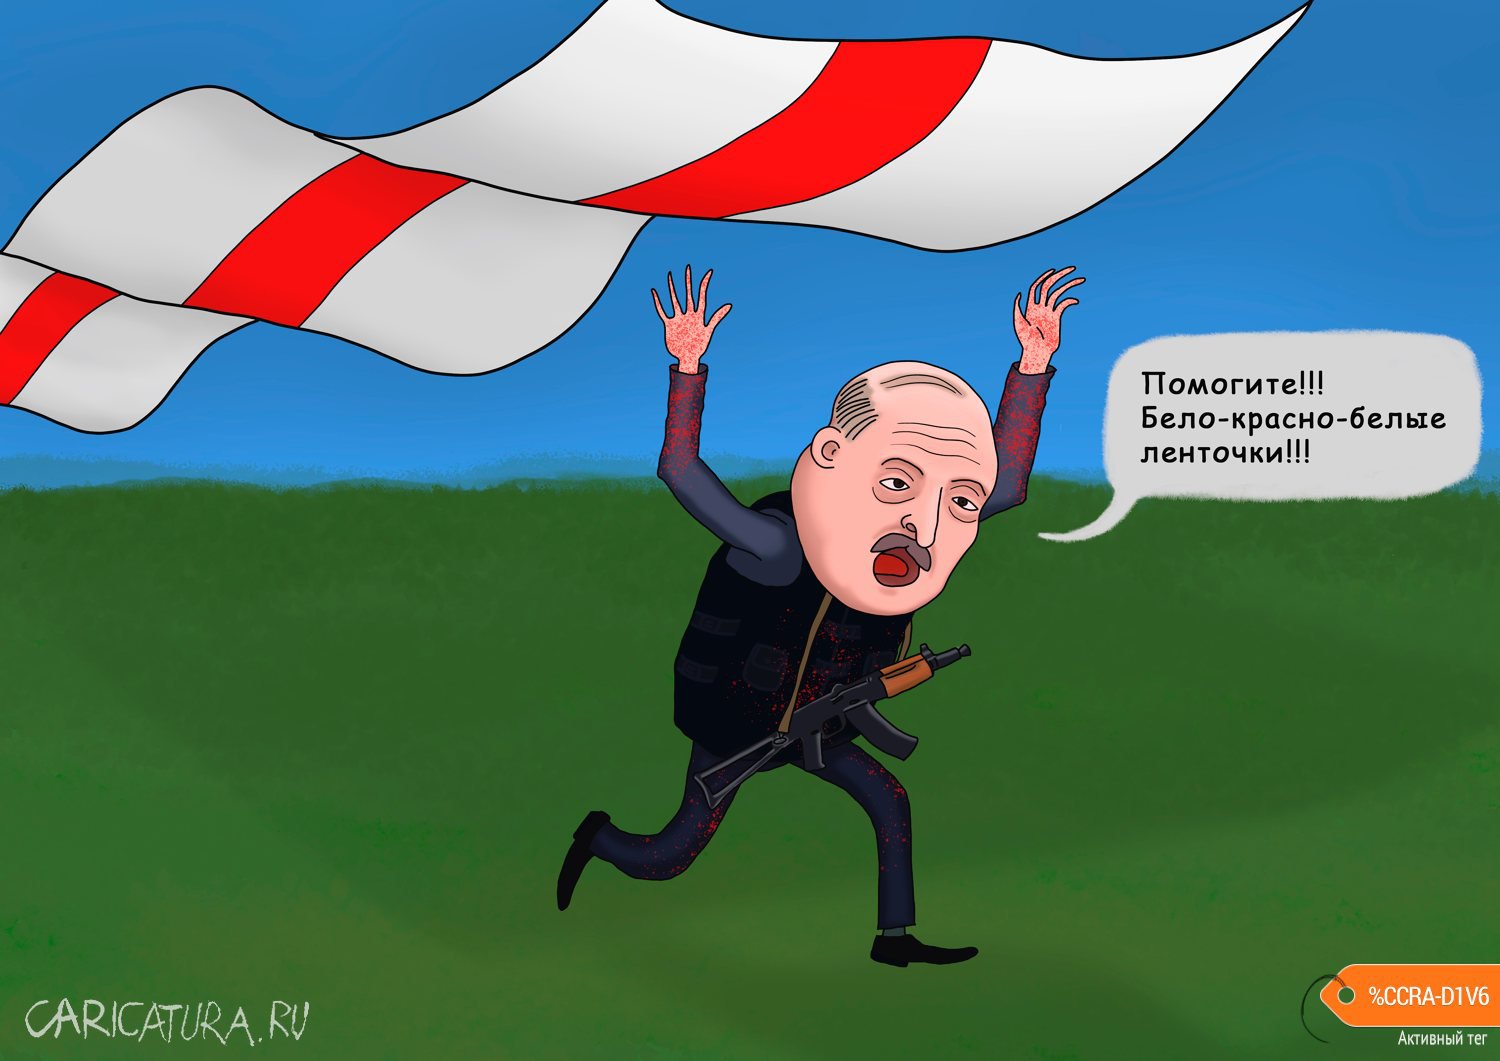 Карикатура "Помогите!!! Бело-красно-белые ленточки!!!", Георгий Урушадзе